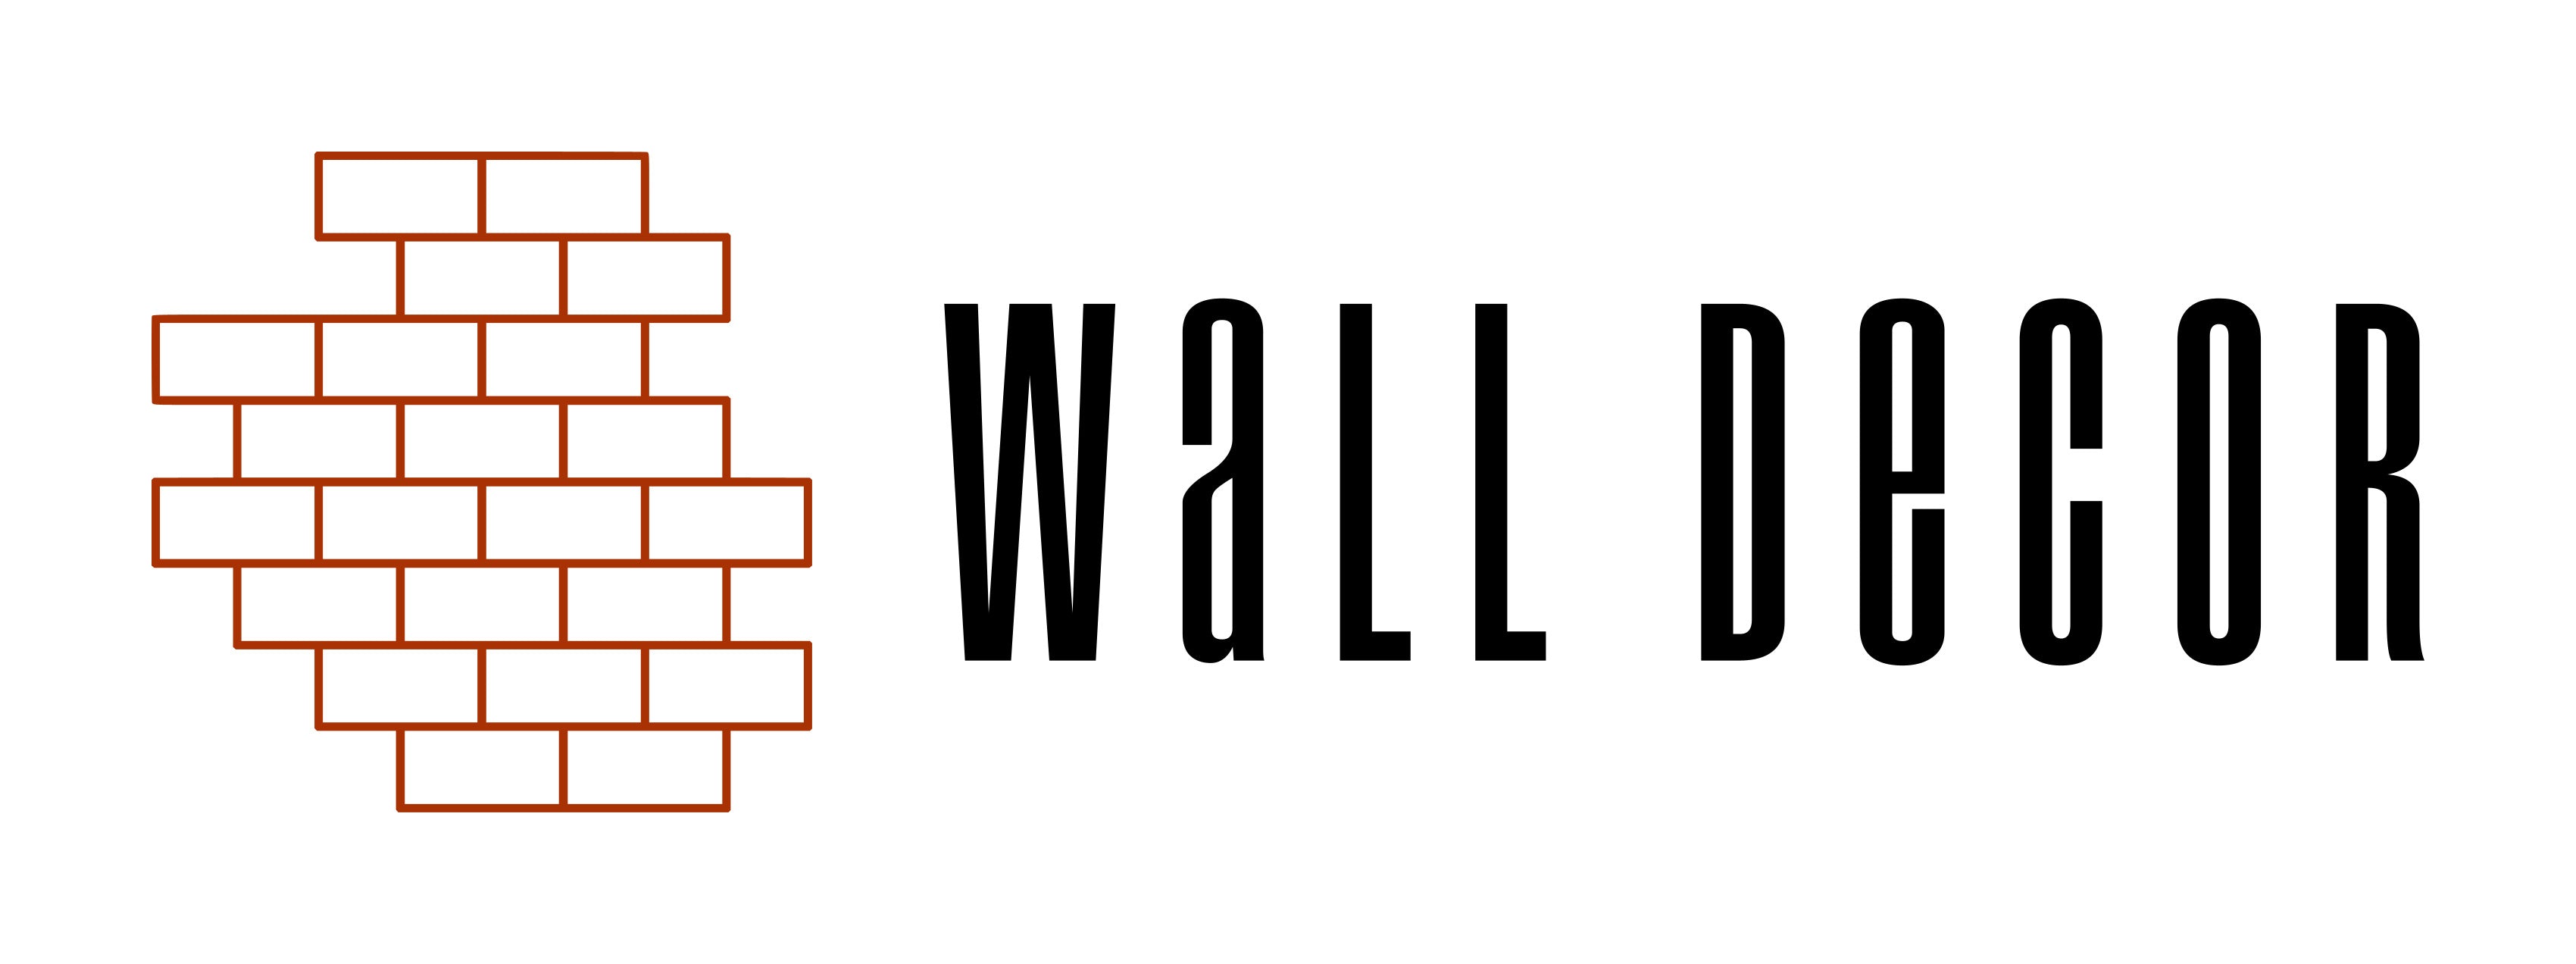 walldecor.com.mx